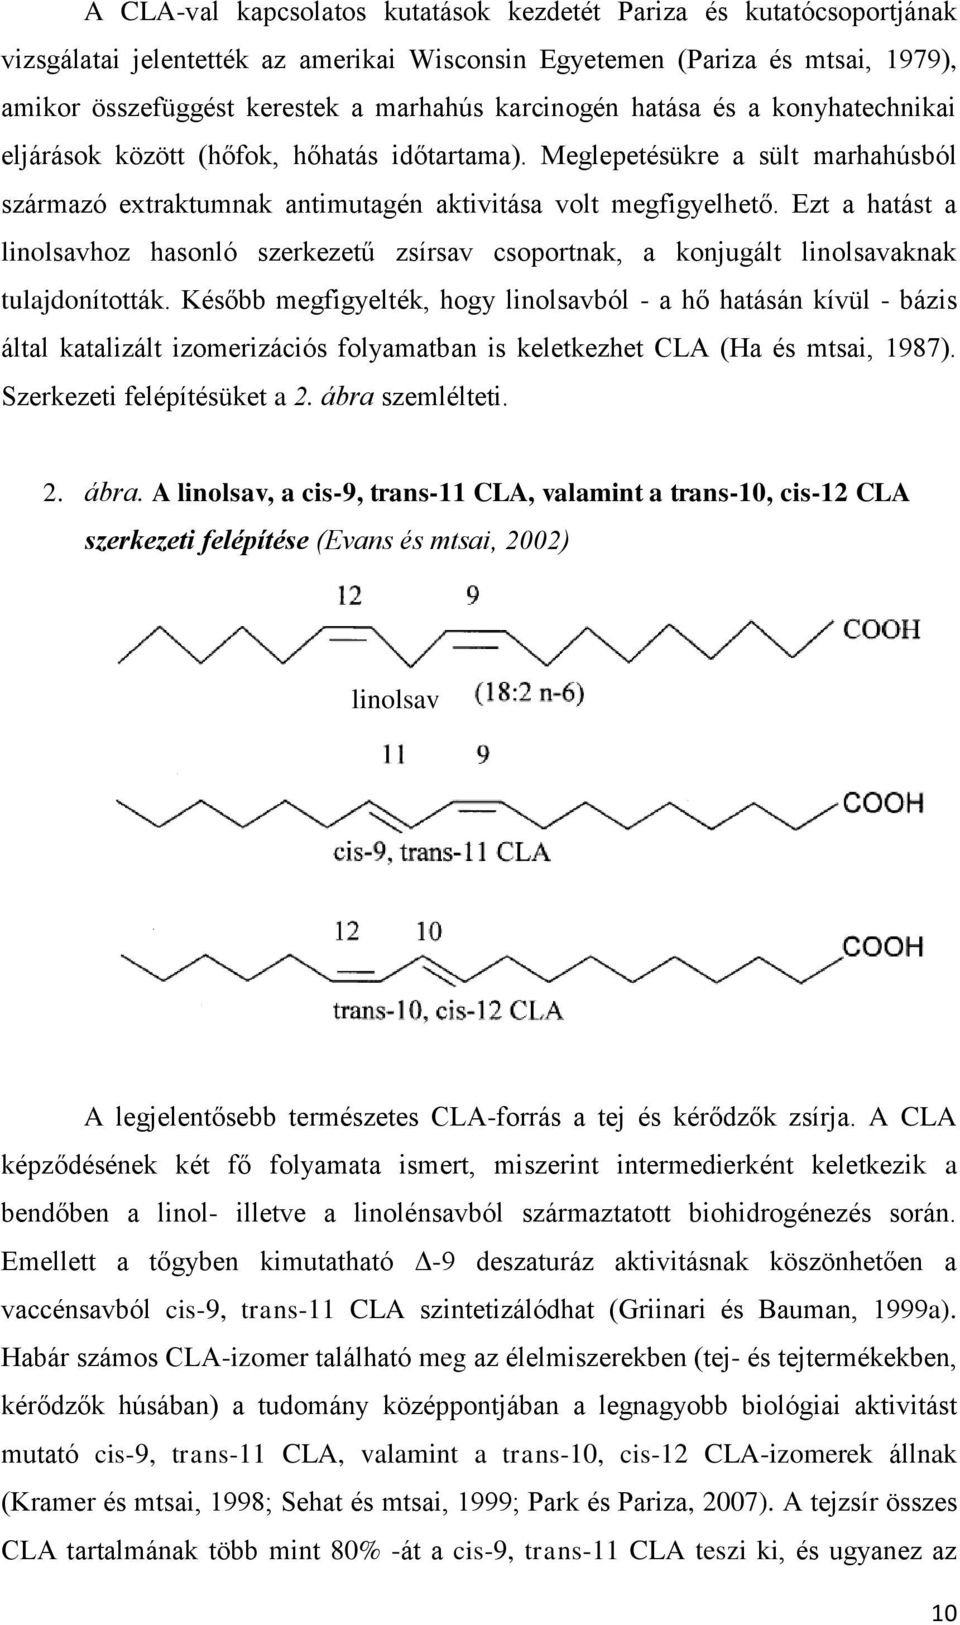 Ezt a hatást a linolsavhoz hasonló szerkezetű zsírsav csoportnak, a konjugált linolsavaknak tulajdonították.